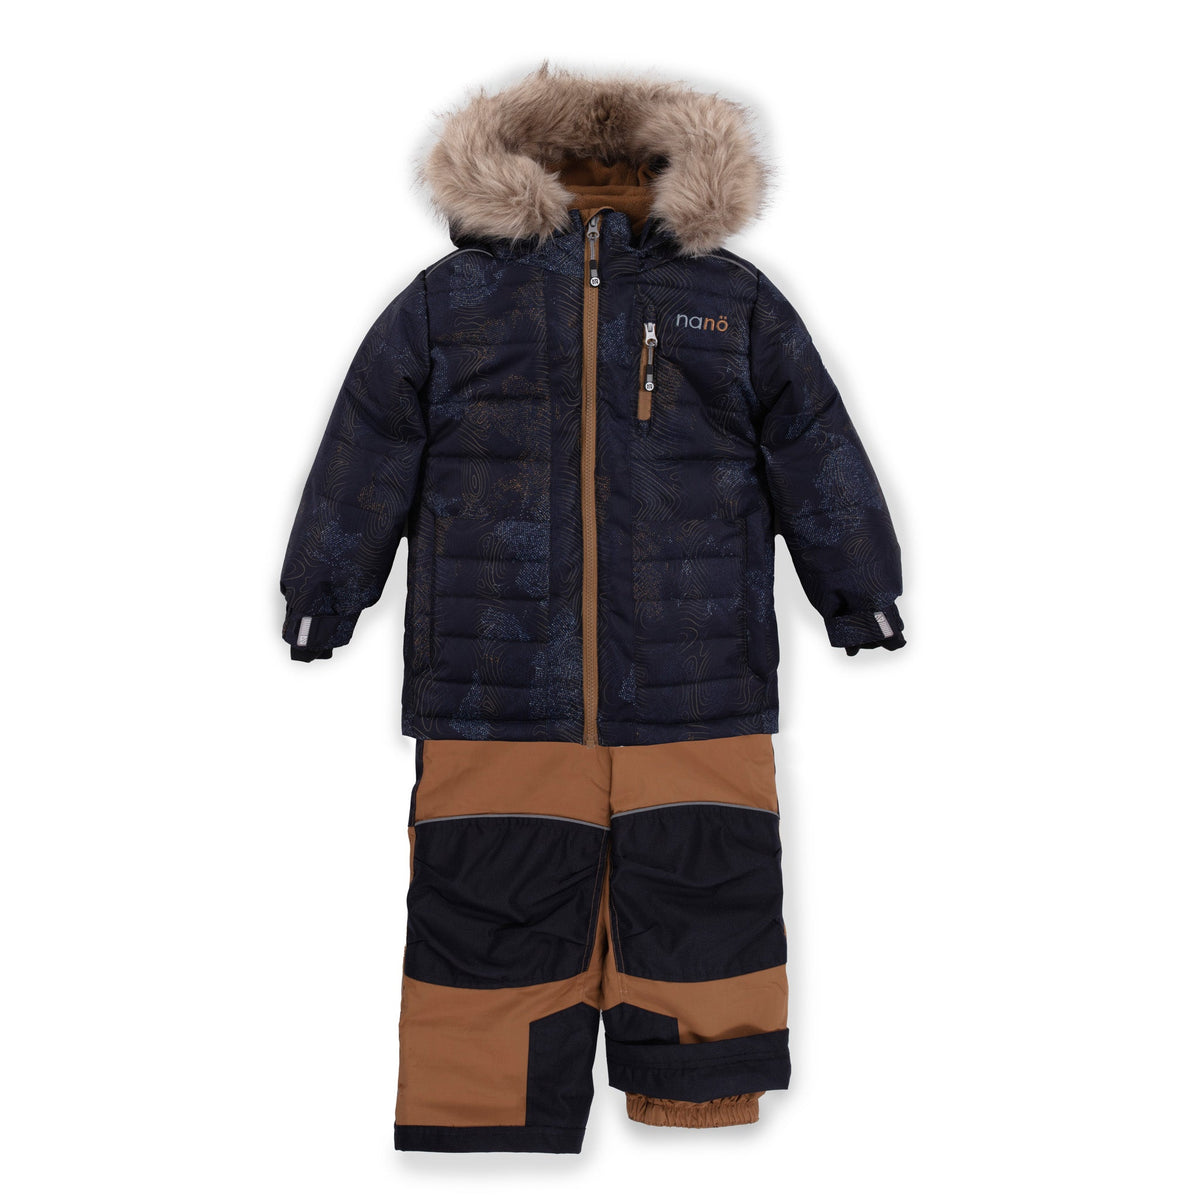 Habit de neige pour enfant garçon par Nanö | Simon/F23M215 Marine | Boutique Flos, vêtements mode pour bébés et enfants